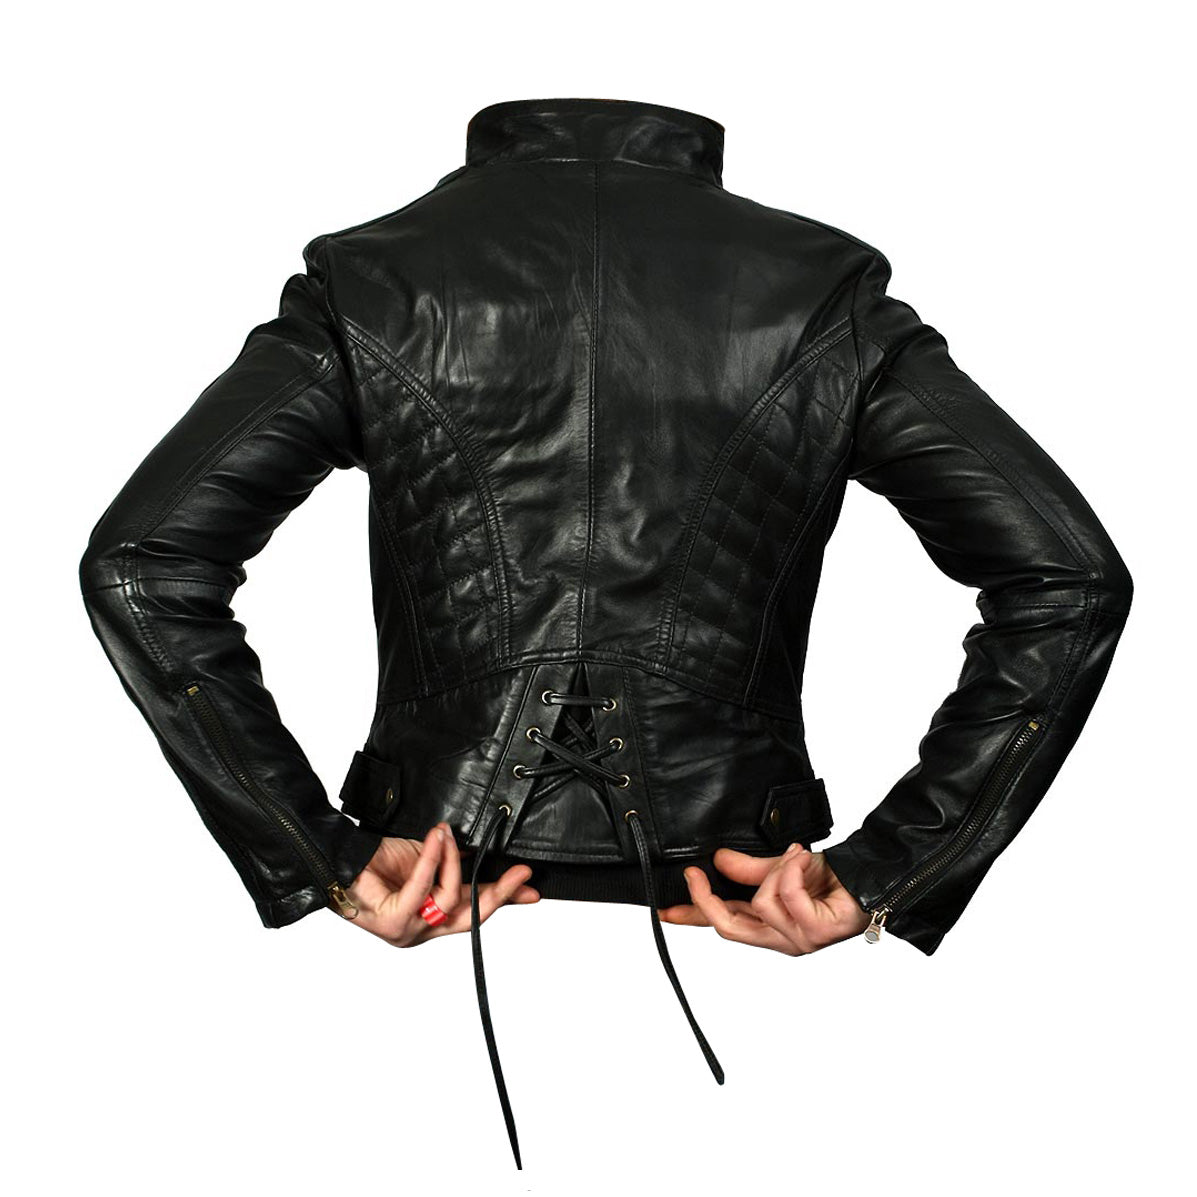 Women's Lynn Black Leather Side Zip Jacket Safe and Waterproof